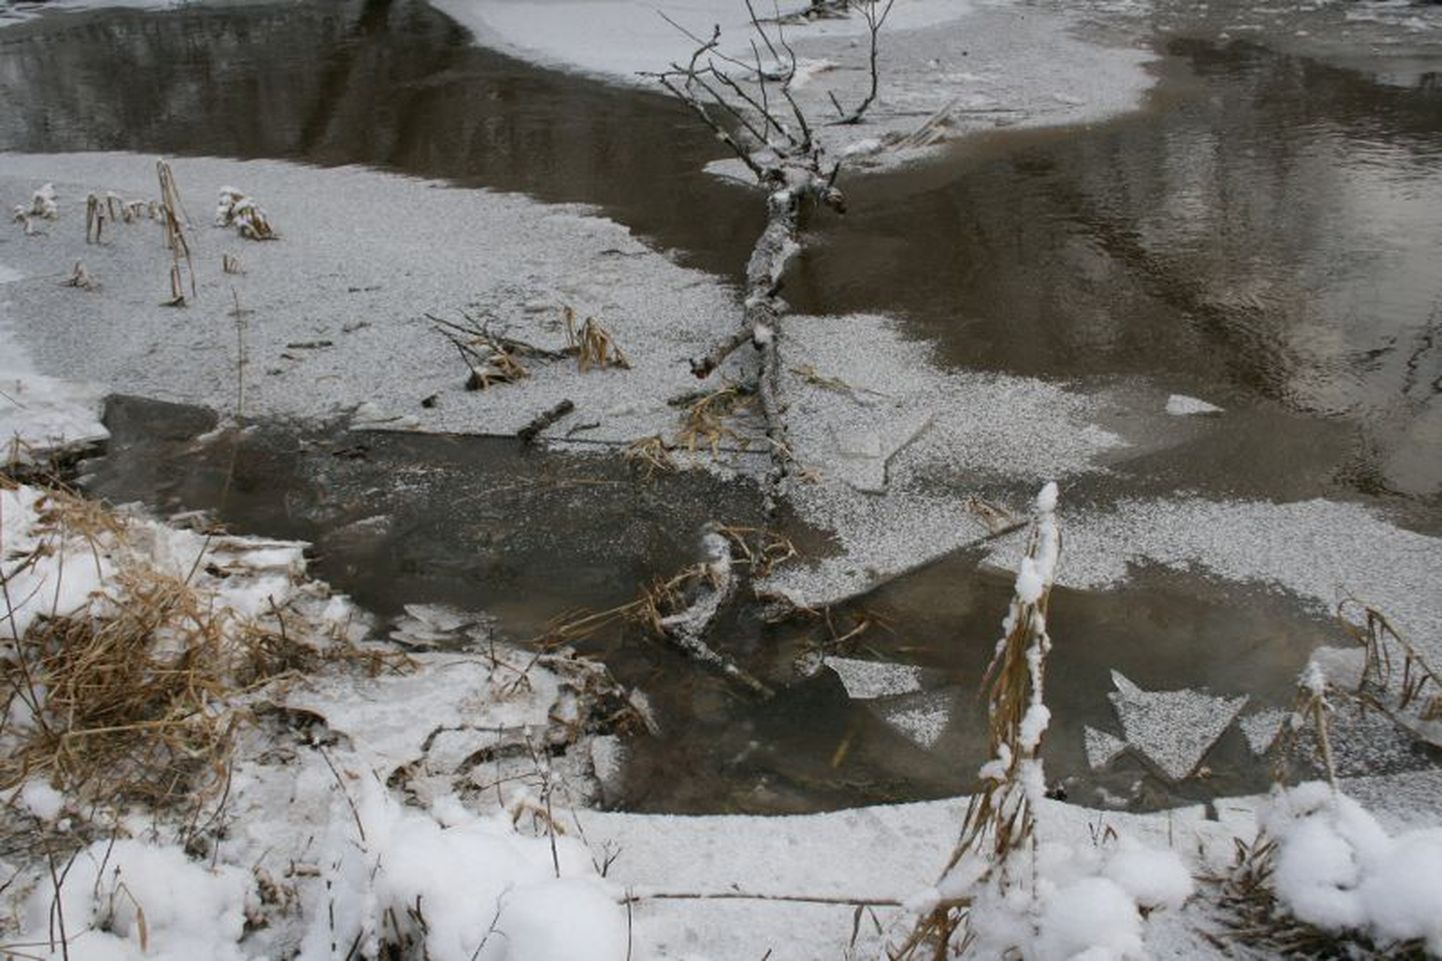 Место, где нарушители переплыли реку, и их следы на снегу